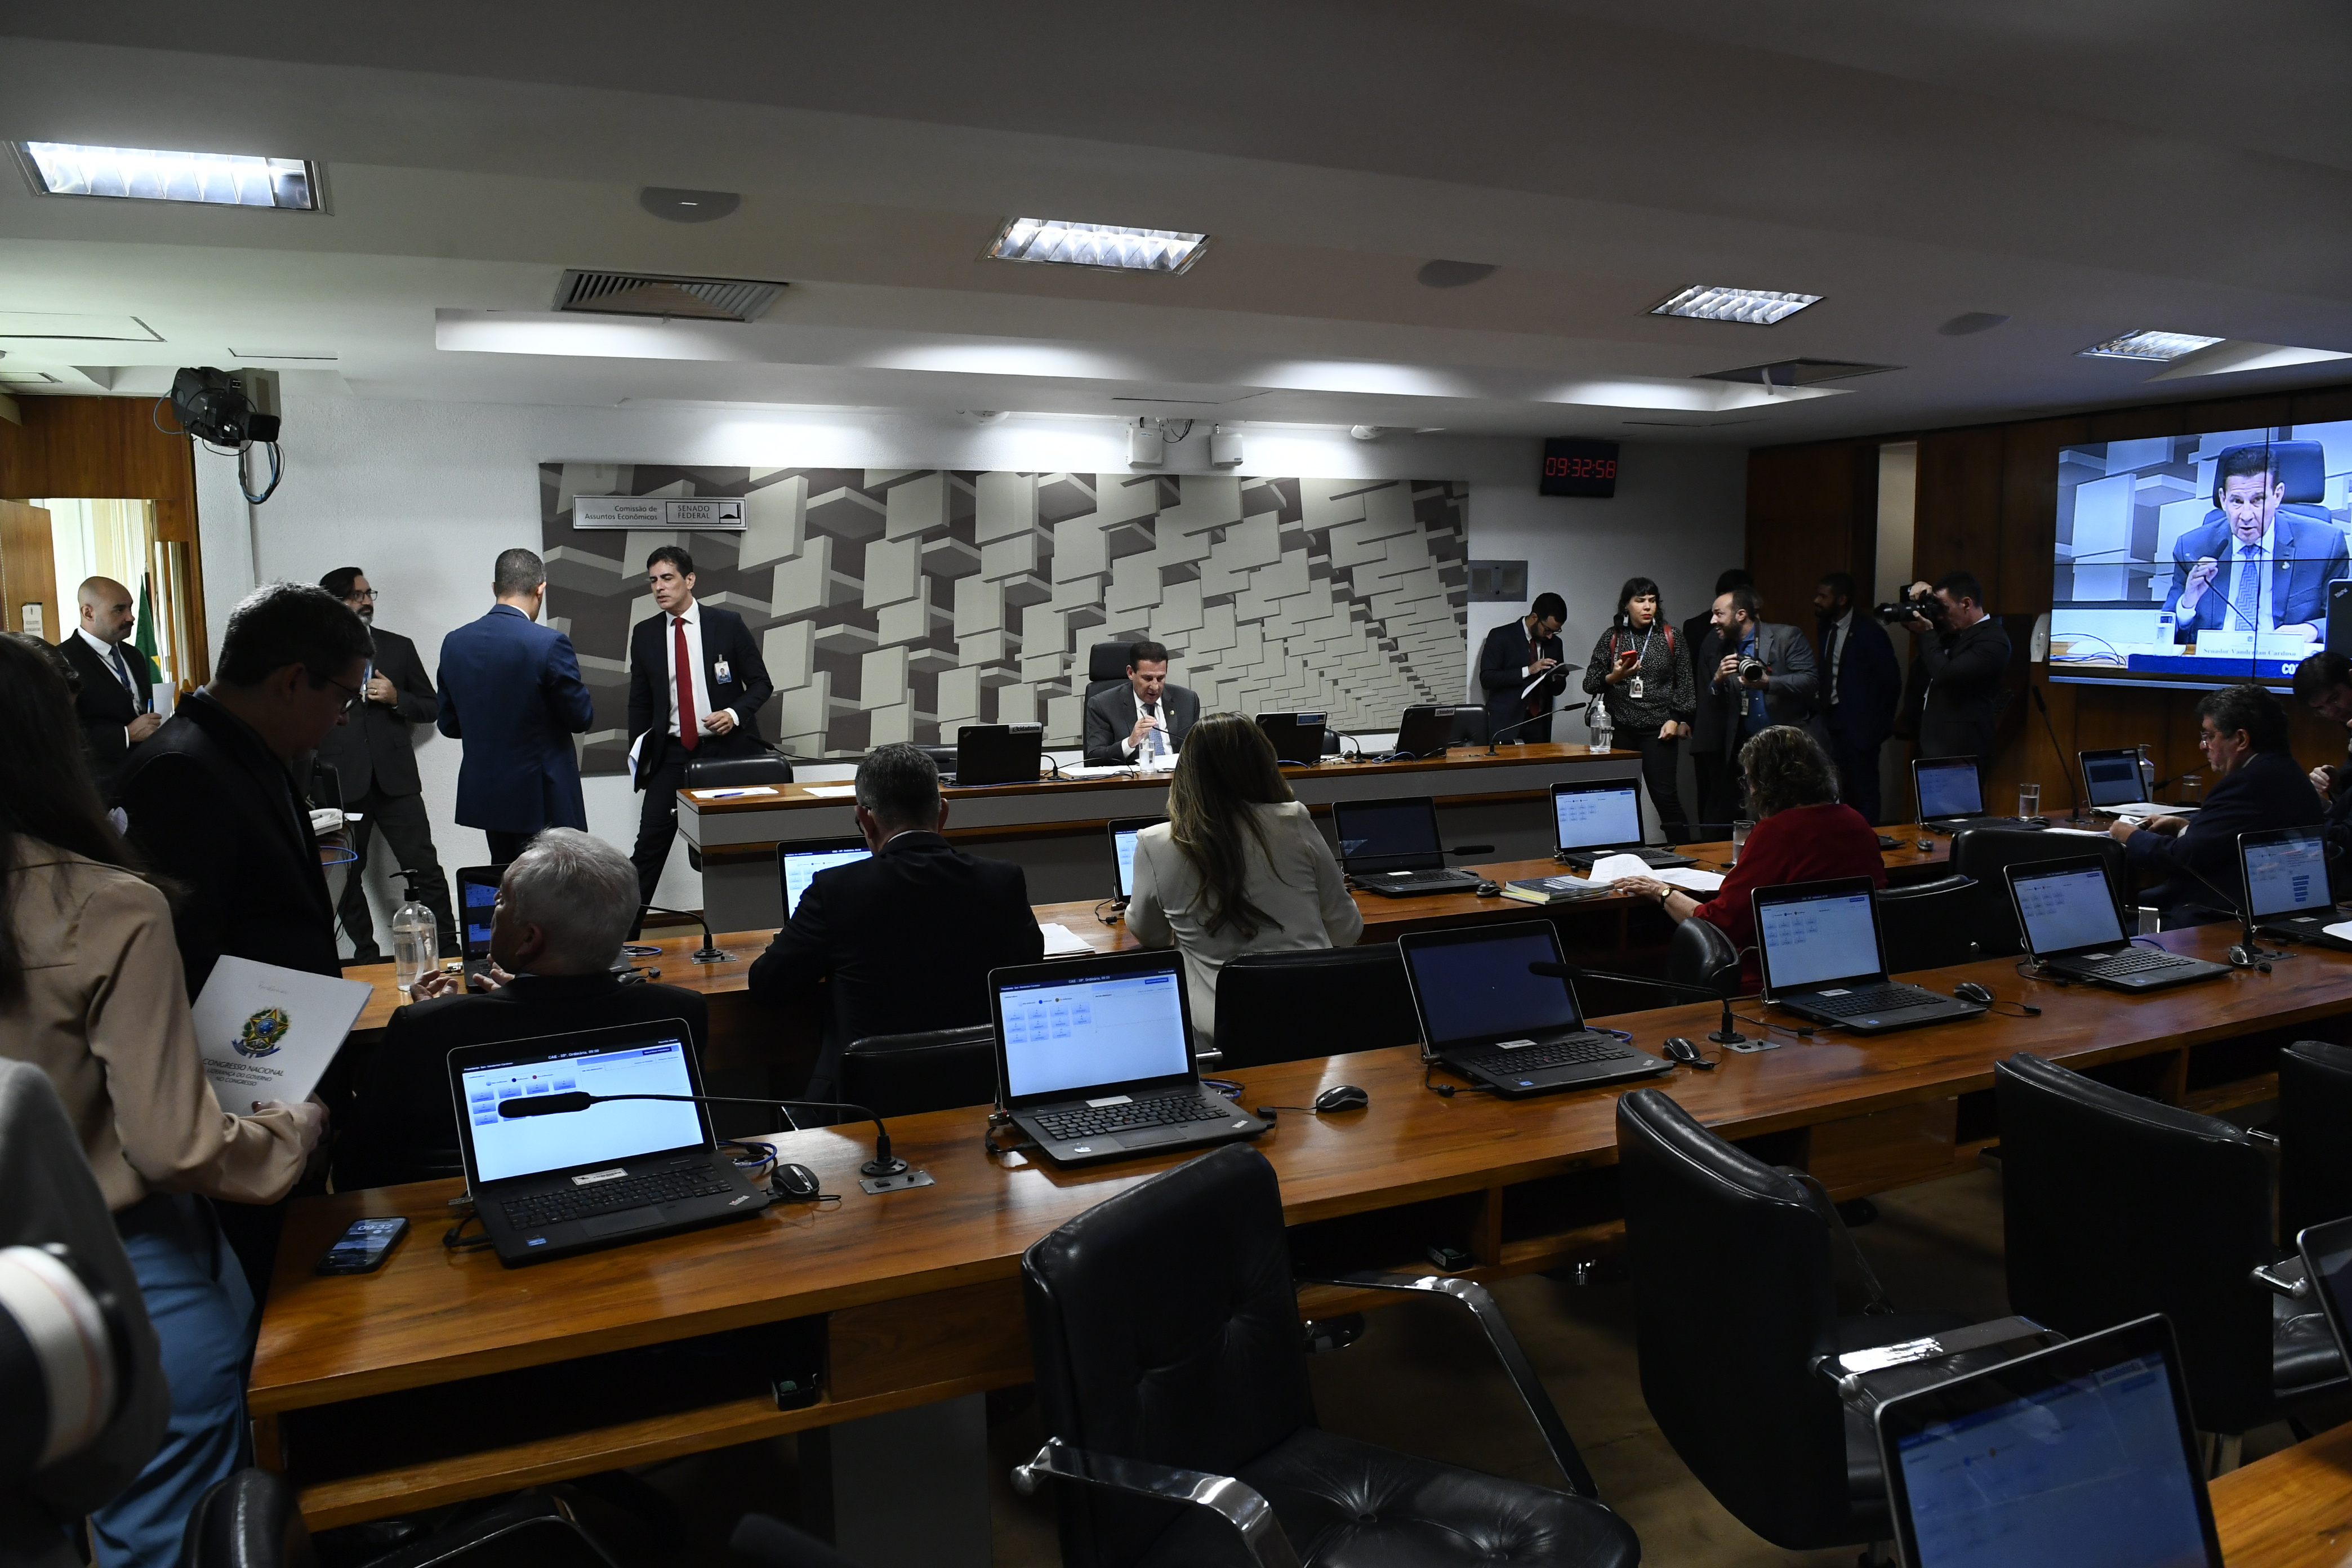 Bancada:
senador Fernando Dueire (MDB-PE); 
senador Fernando Farias (MDB-AL); 
senadora Teresa Leitão (PT-PE); 
senadora Augusta Brito (PT-CE); 
senador Rogério Carvalho (PT-SE);
senador Otto Alencar (PSD-BA); 
senador Randolfe Rodrigues (Rede-AP).